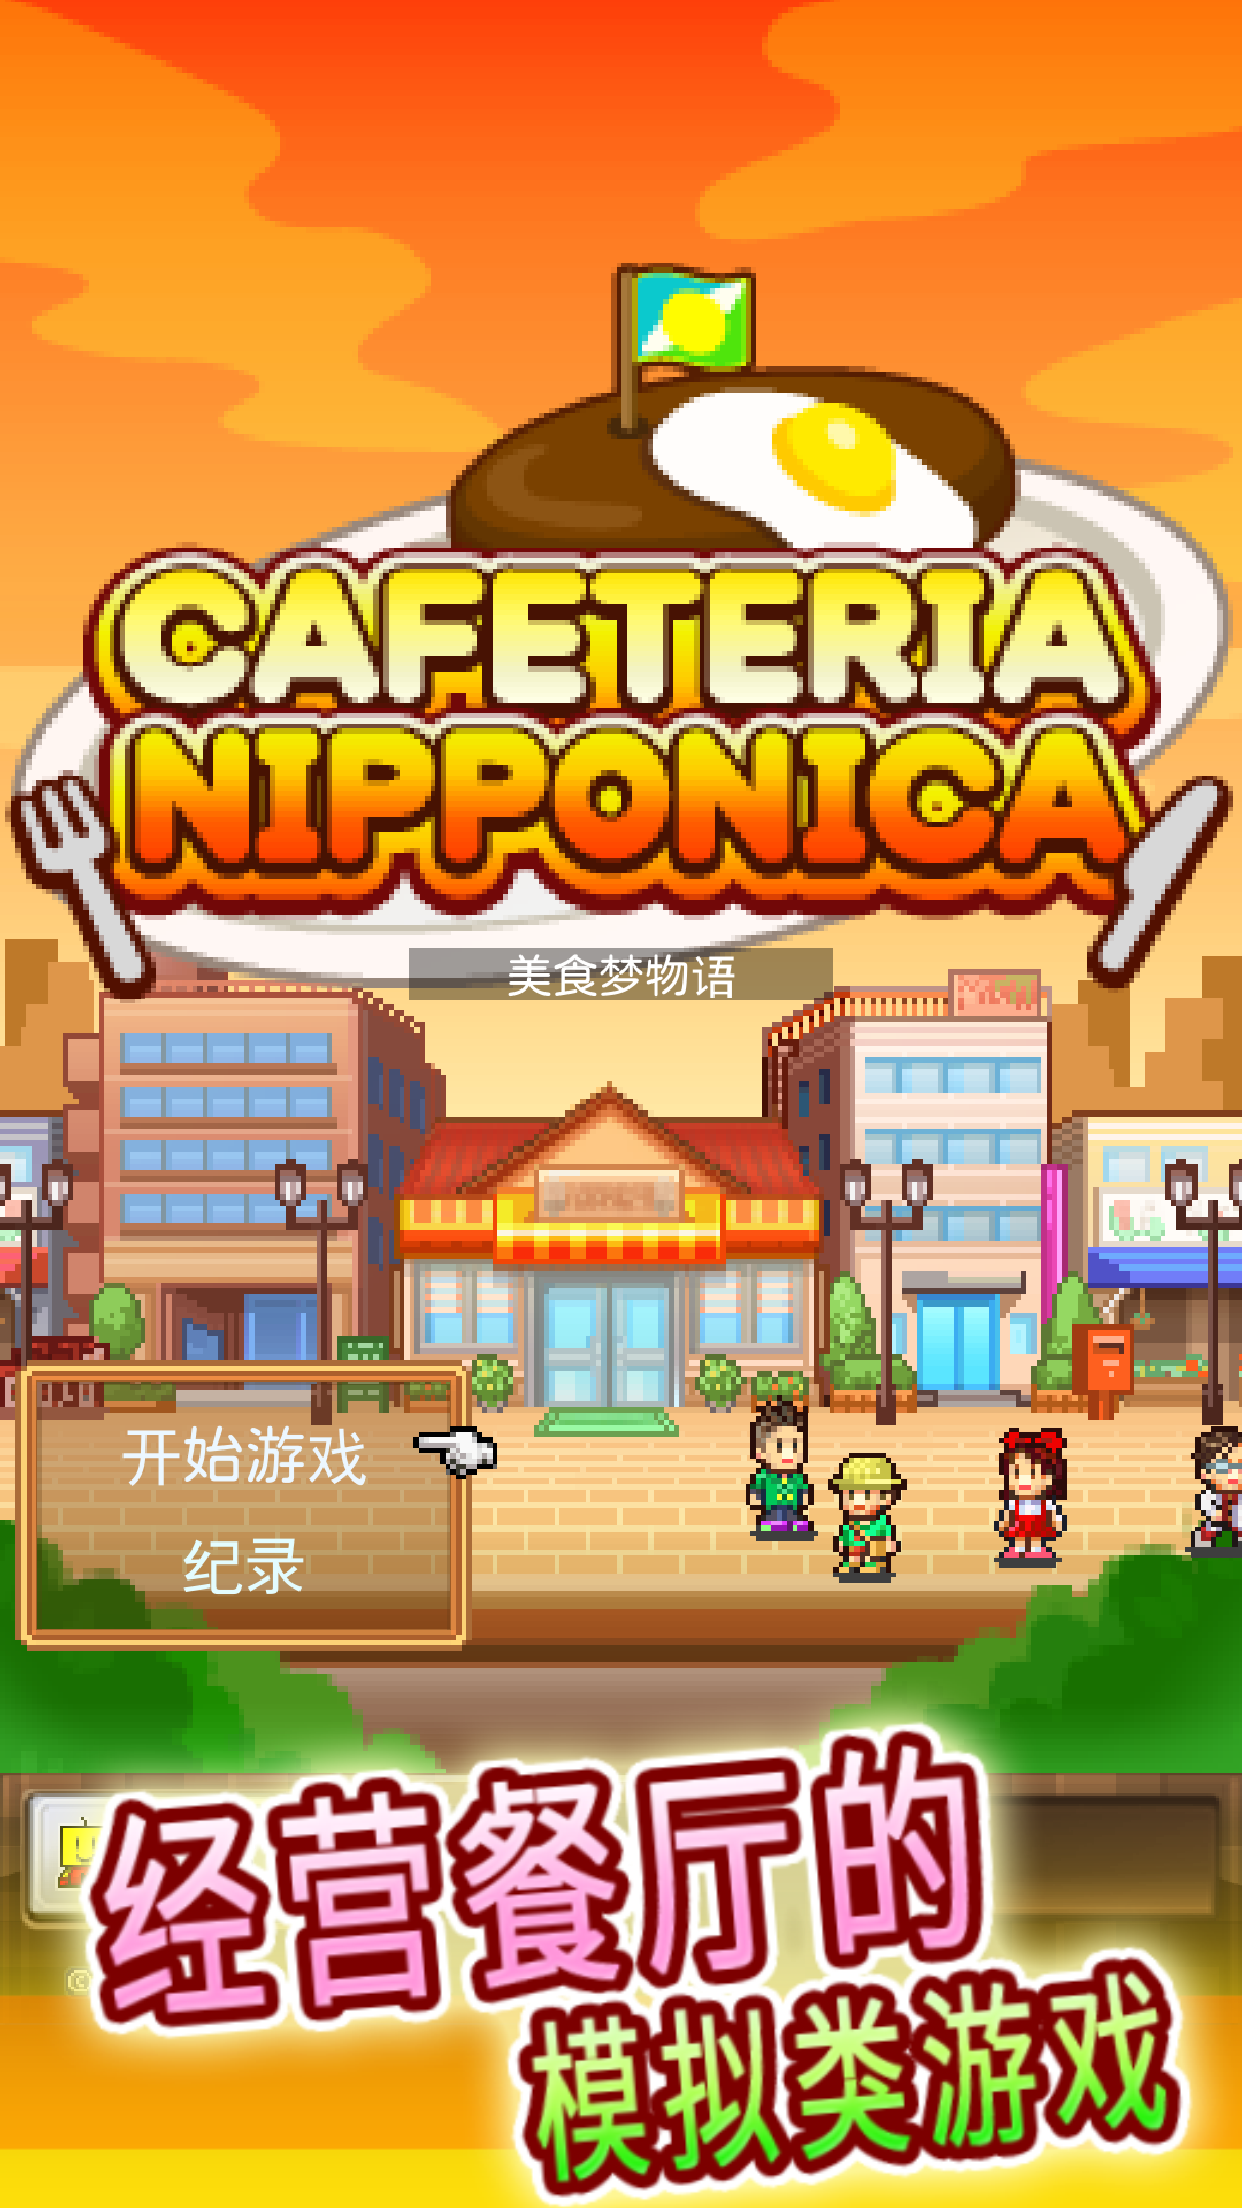 Banner of cafetería japonesa 